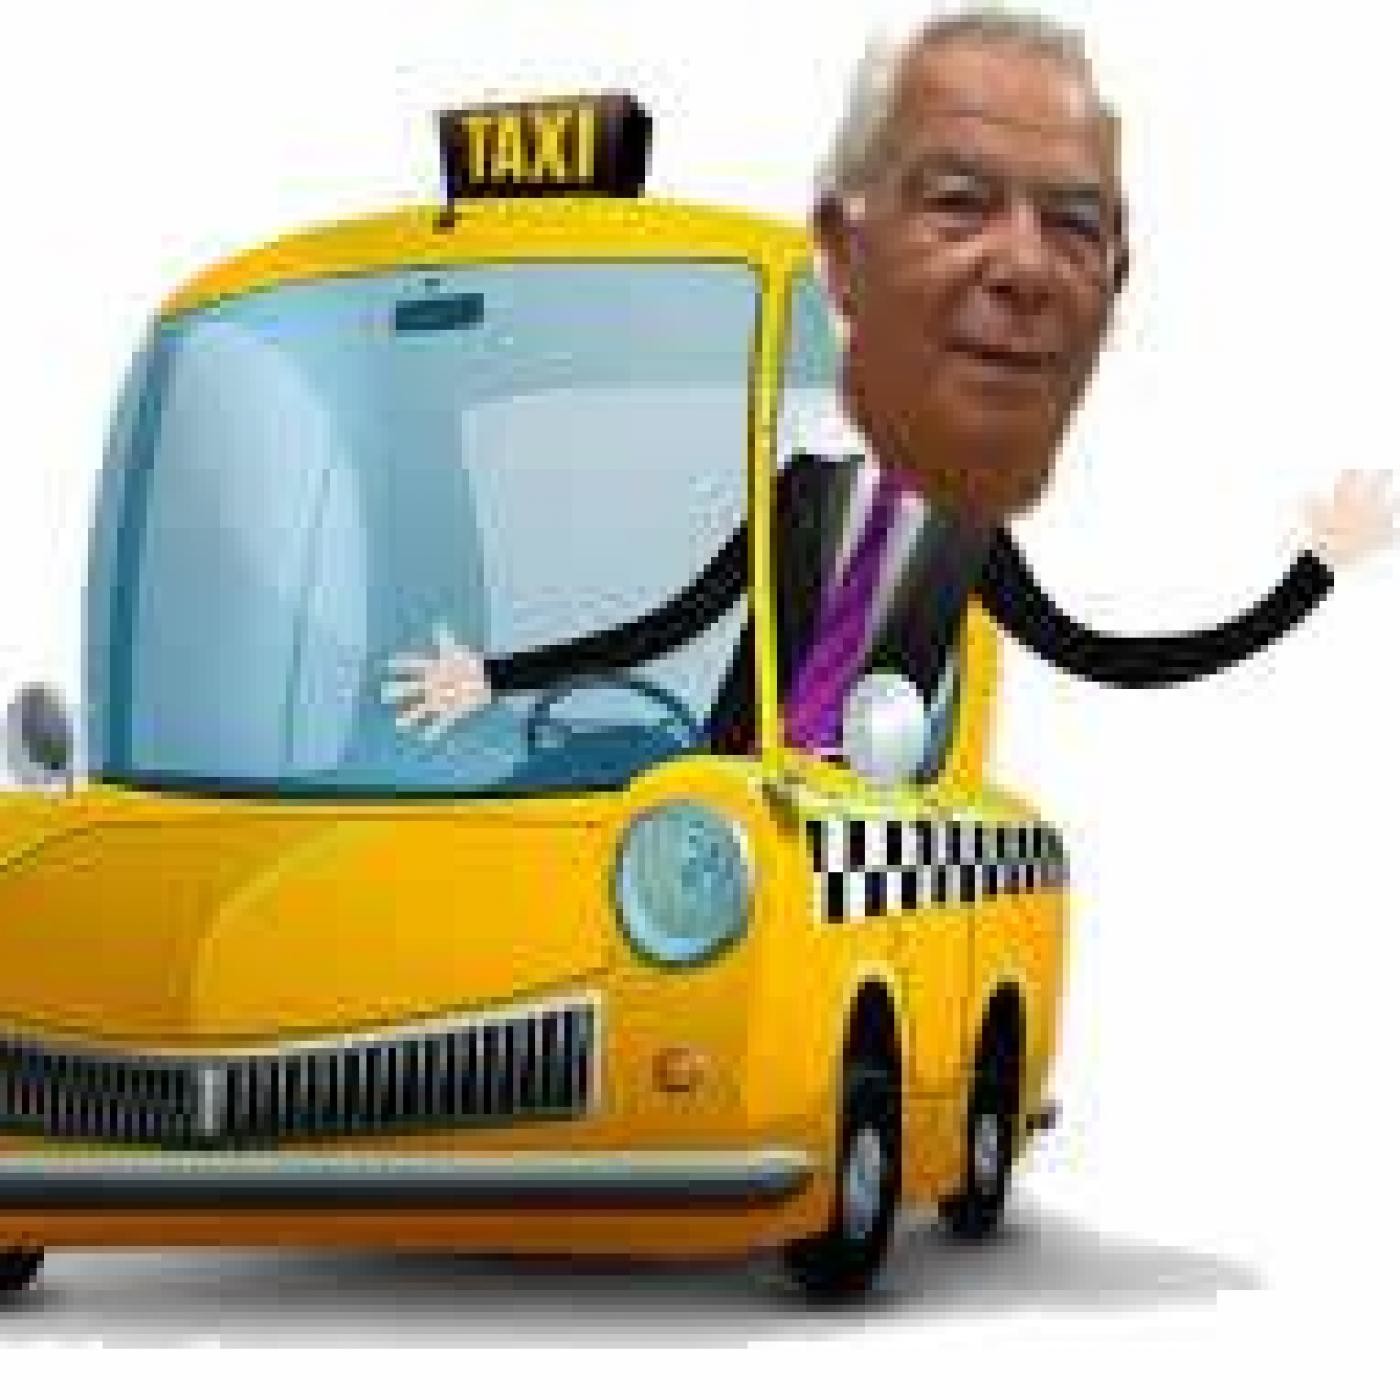 La hora del taxi, viernes 15 de abril 2016